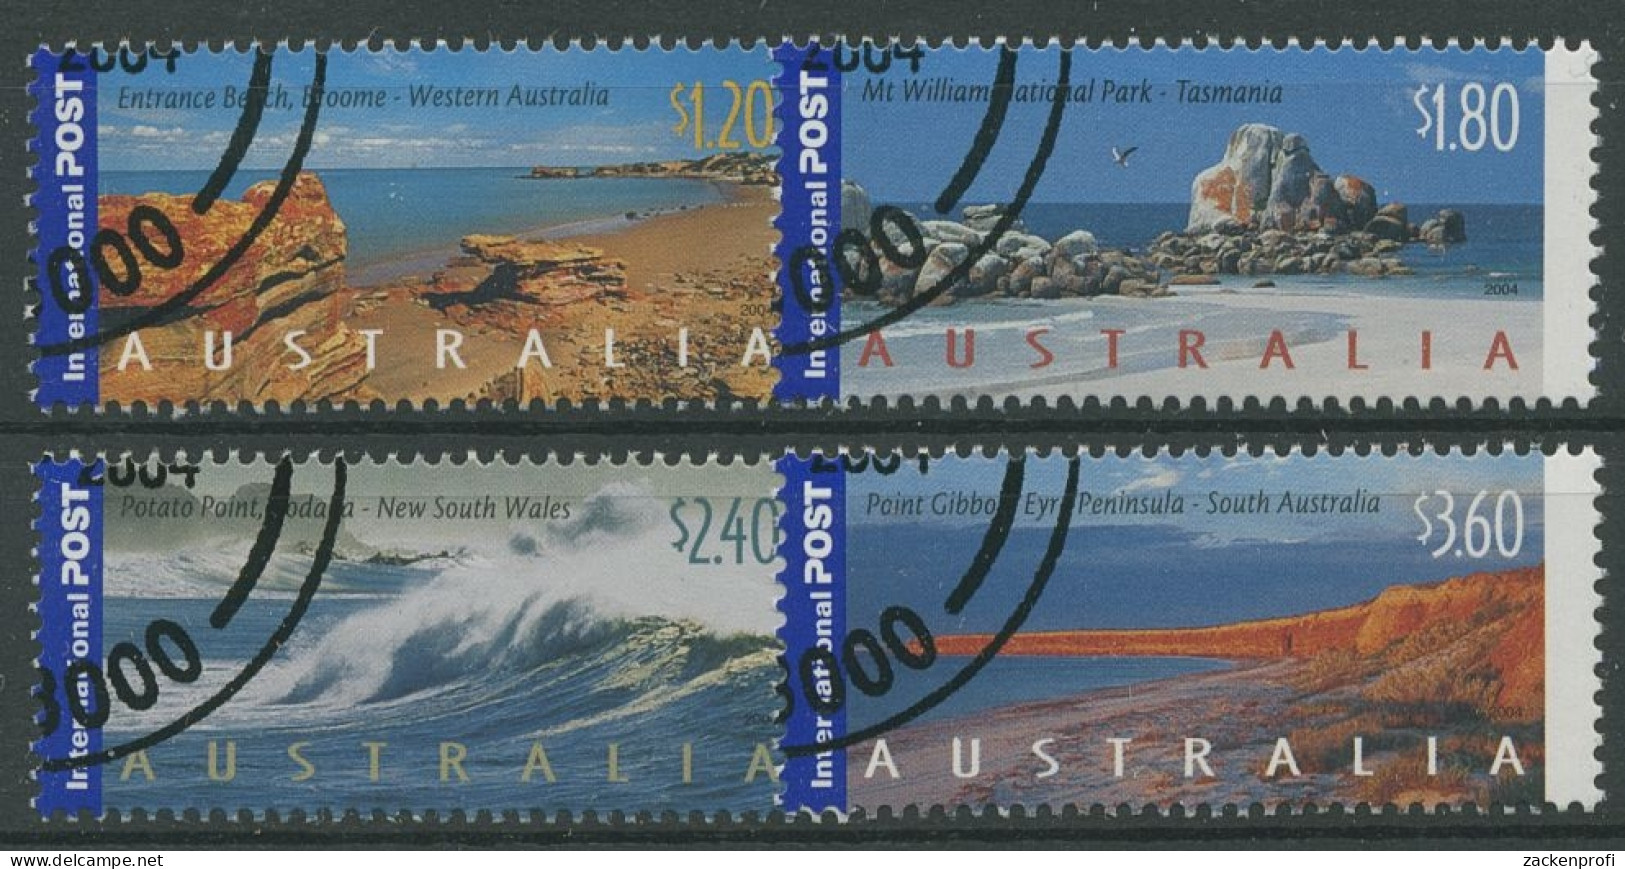 Australien 2004 Sehenswürdigkeit. U. Landschaften Australiens 2352/55 Gestempelt - Usati